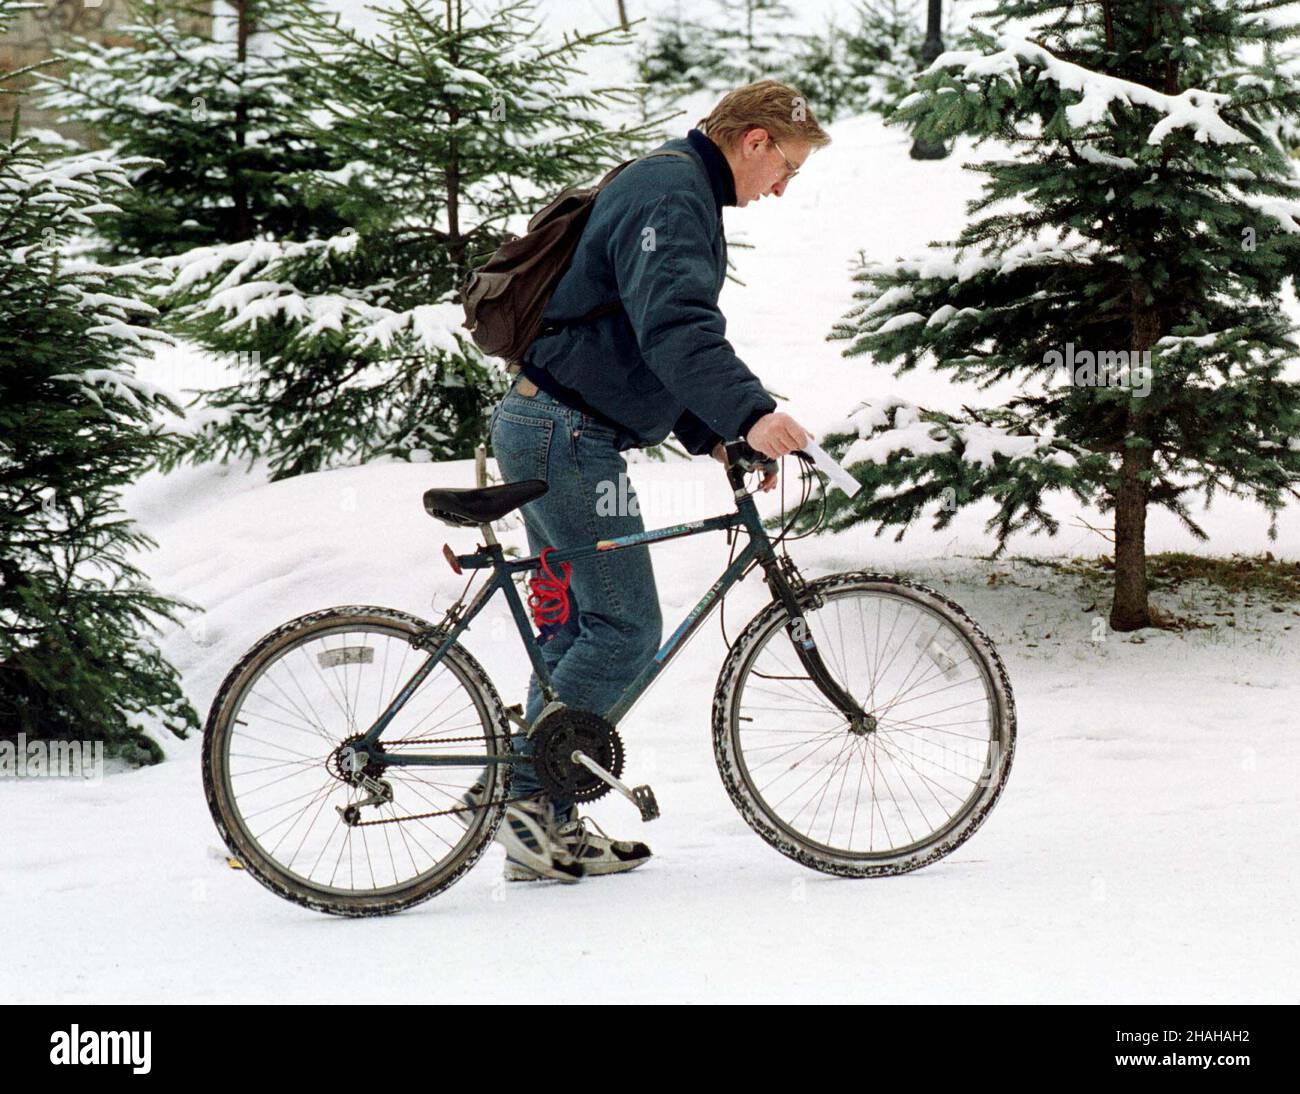 RABKA, 29.12.1999. Ciê¿kie czasy dla cyklistów. (sig.) PAP/Jacek Bednarczyk RABKA, 29.12.1999. Stagione dura per gli amanti della bicicletta. (sig.) PAP/Jacek Bednarczyk Foto Stock